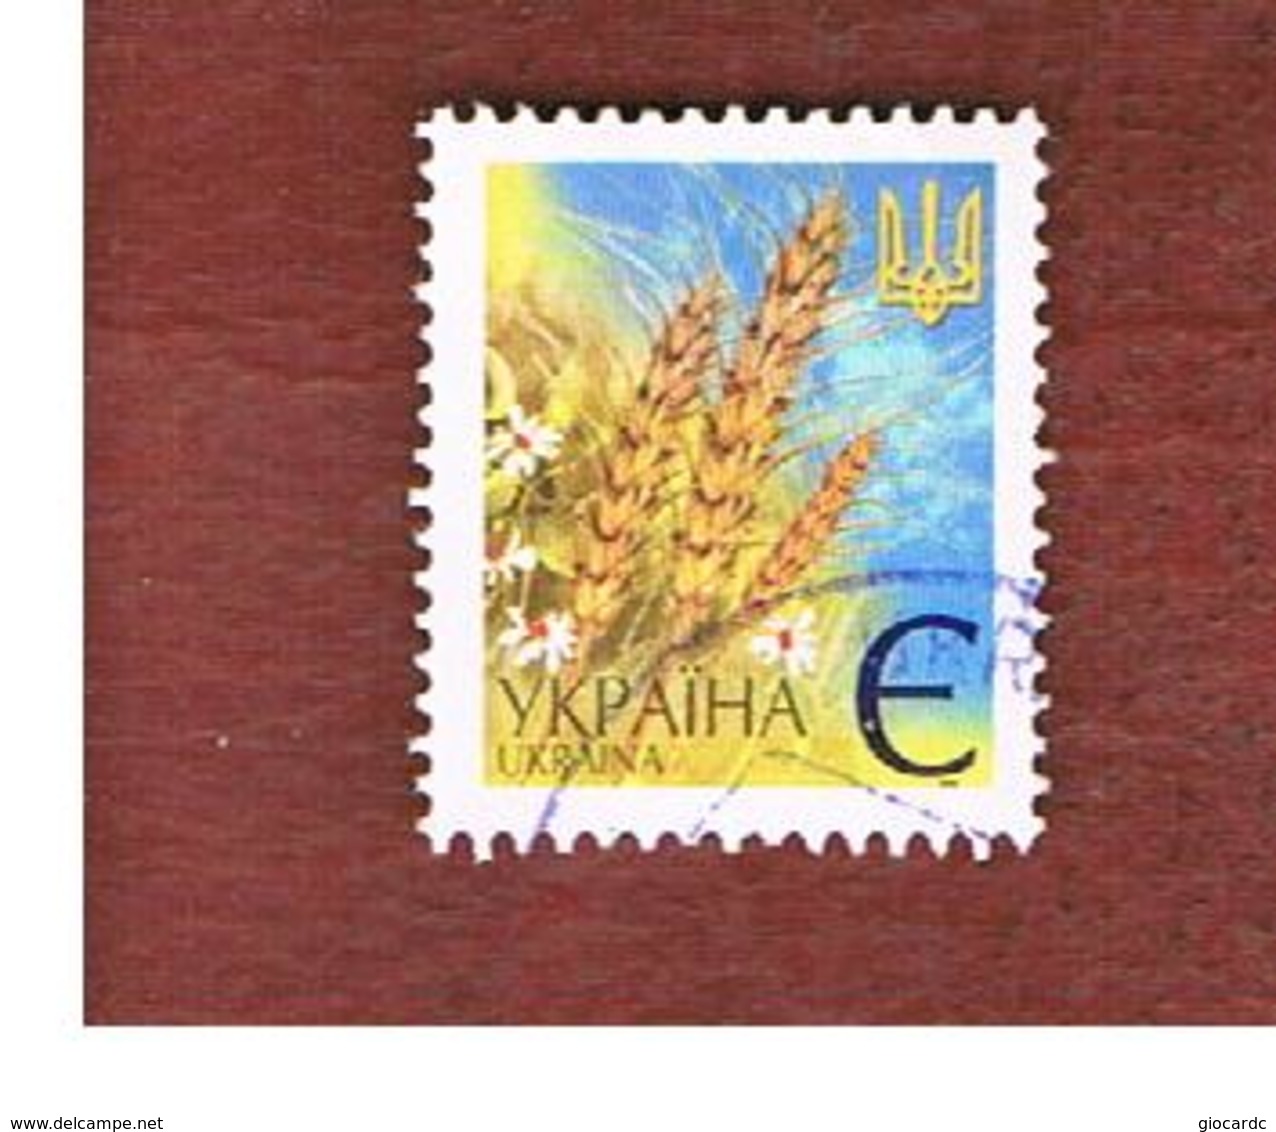 UCRAINA (UKRAINE)  -  MI 437AIV   -  2005  WHEAT EARS -   USED - Ucraina